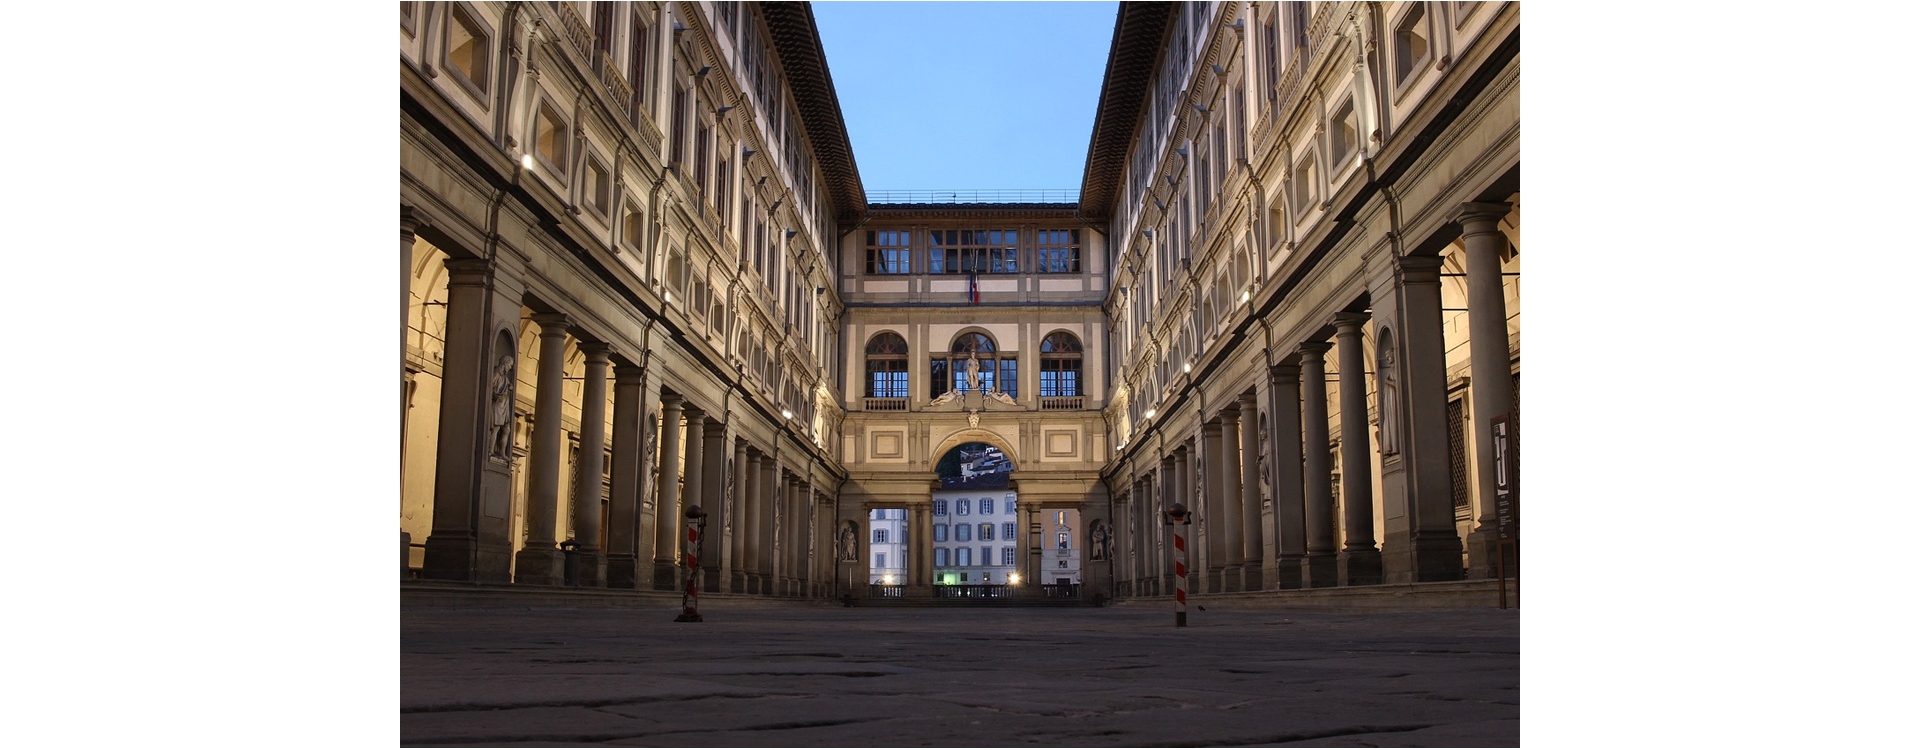 Galleria degli Uffizi è online, visitala subito da casa!